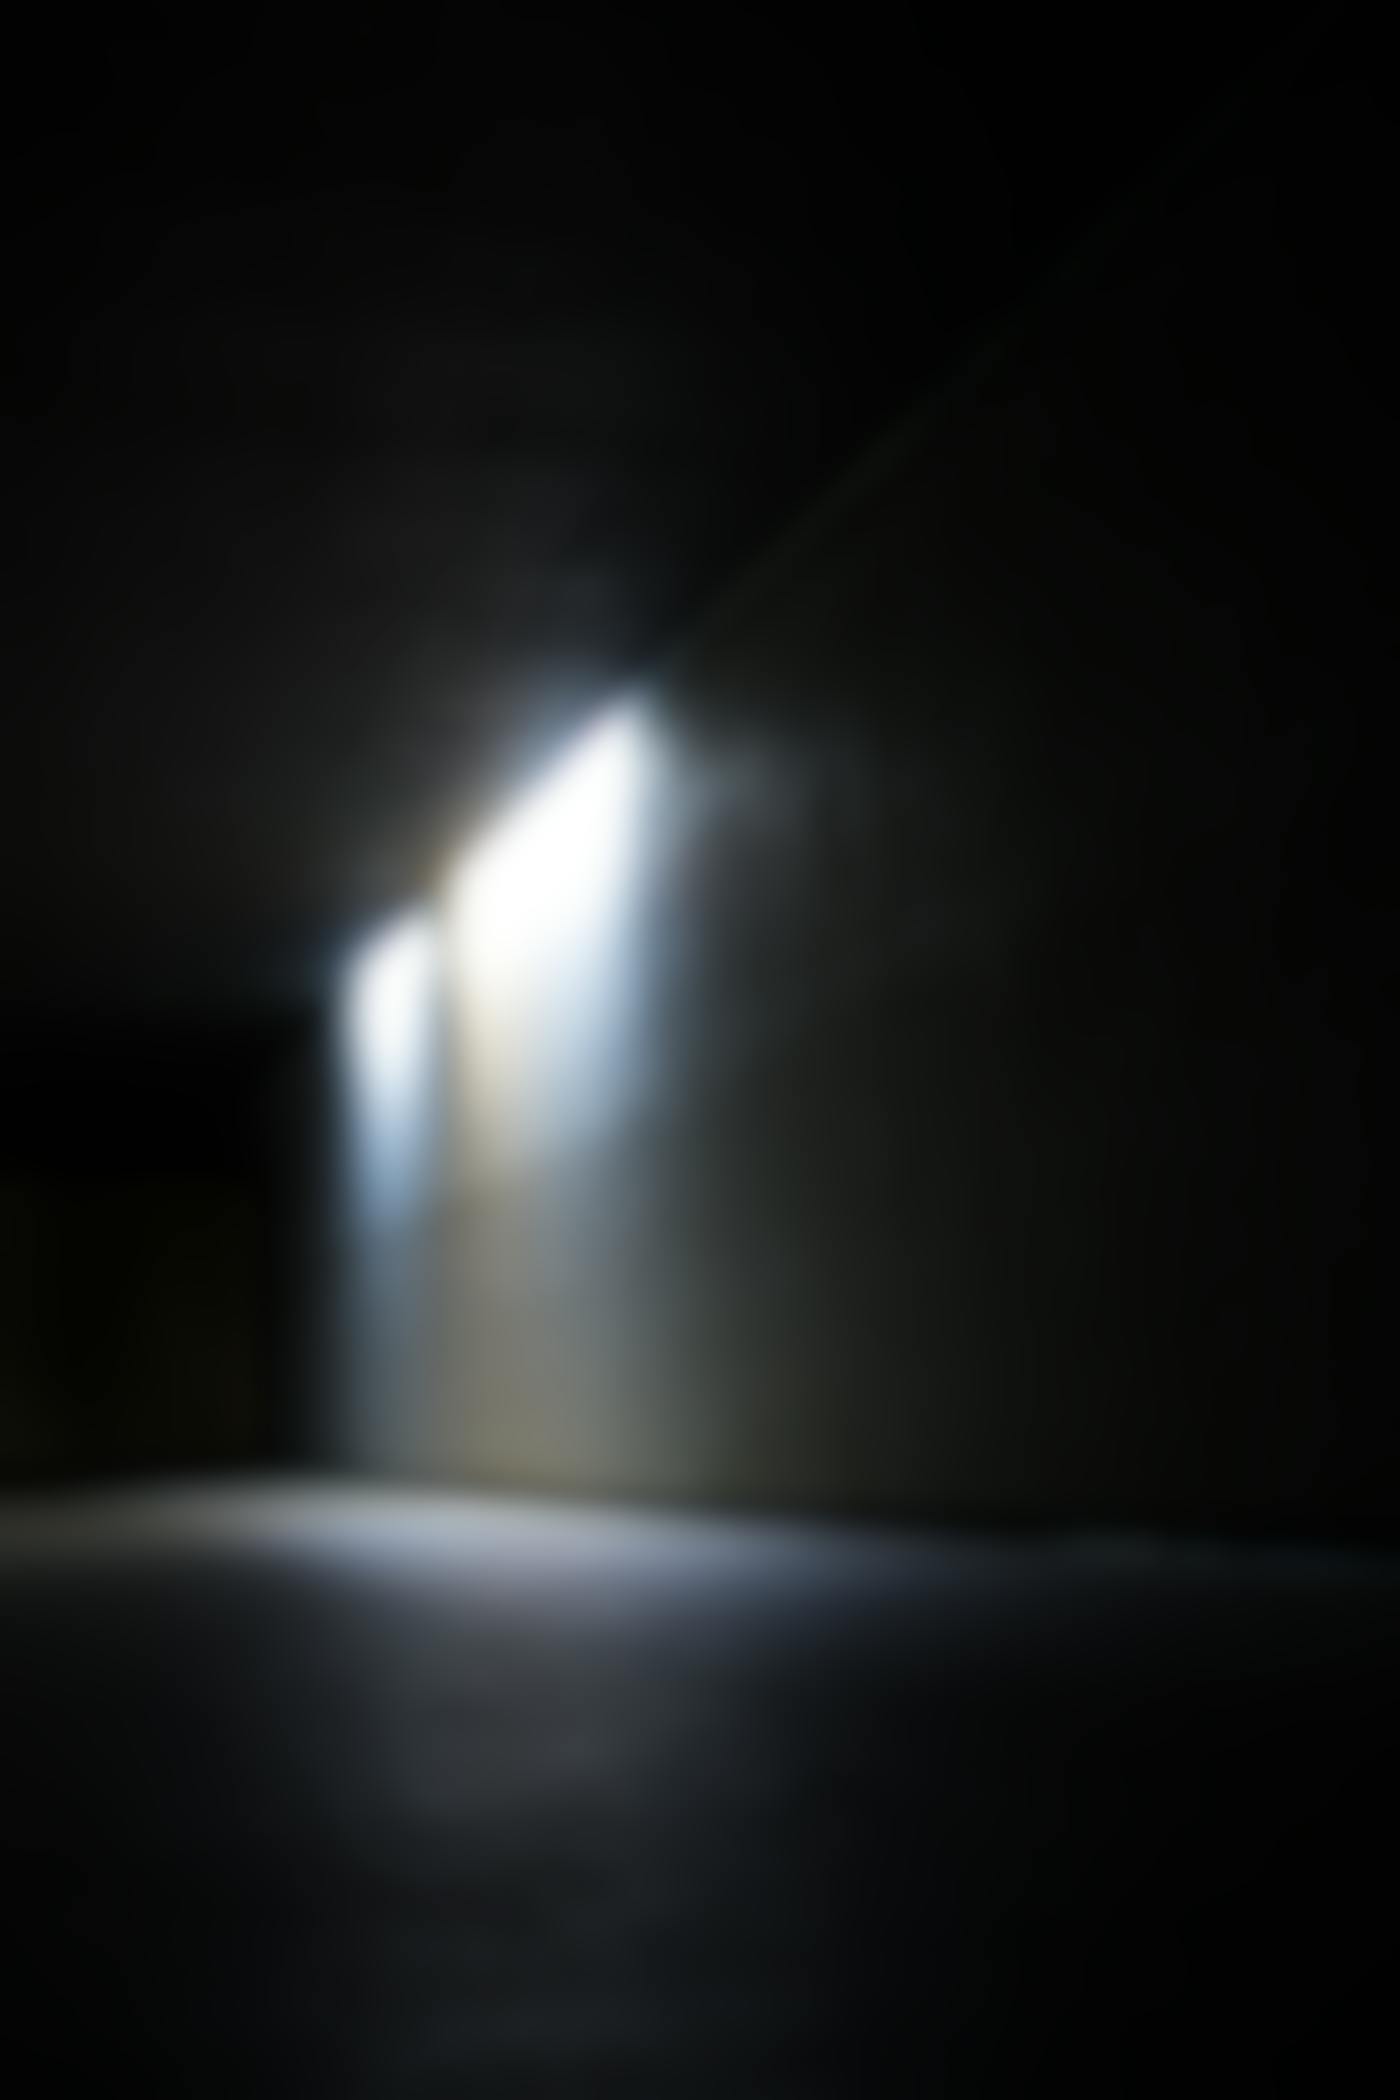 A shadowy, dimmly lit corridor. 